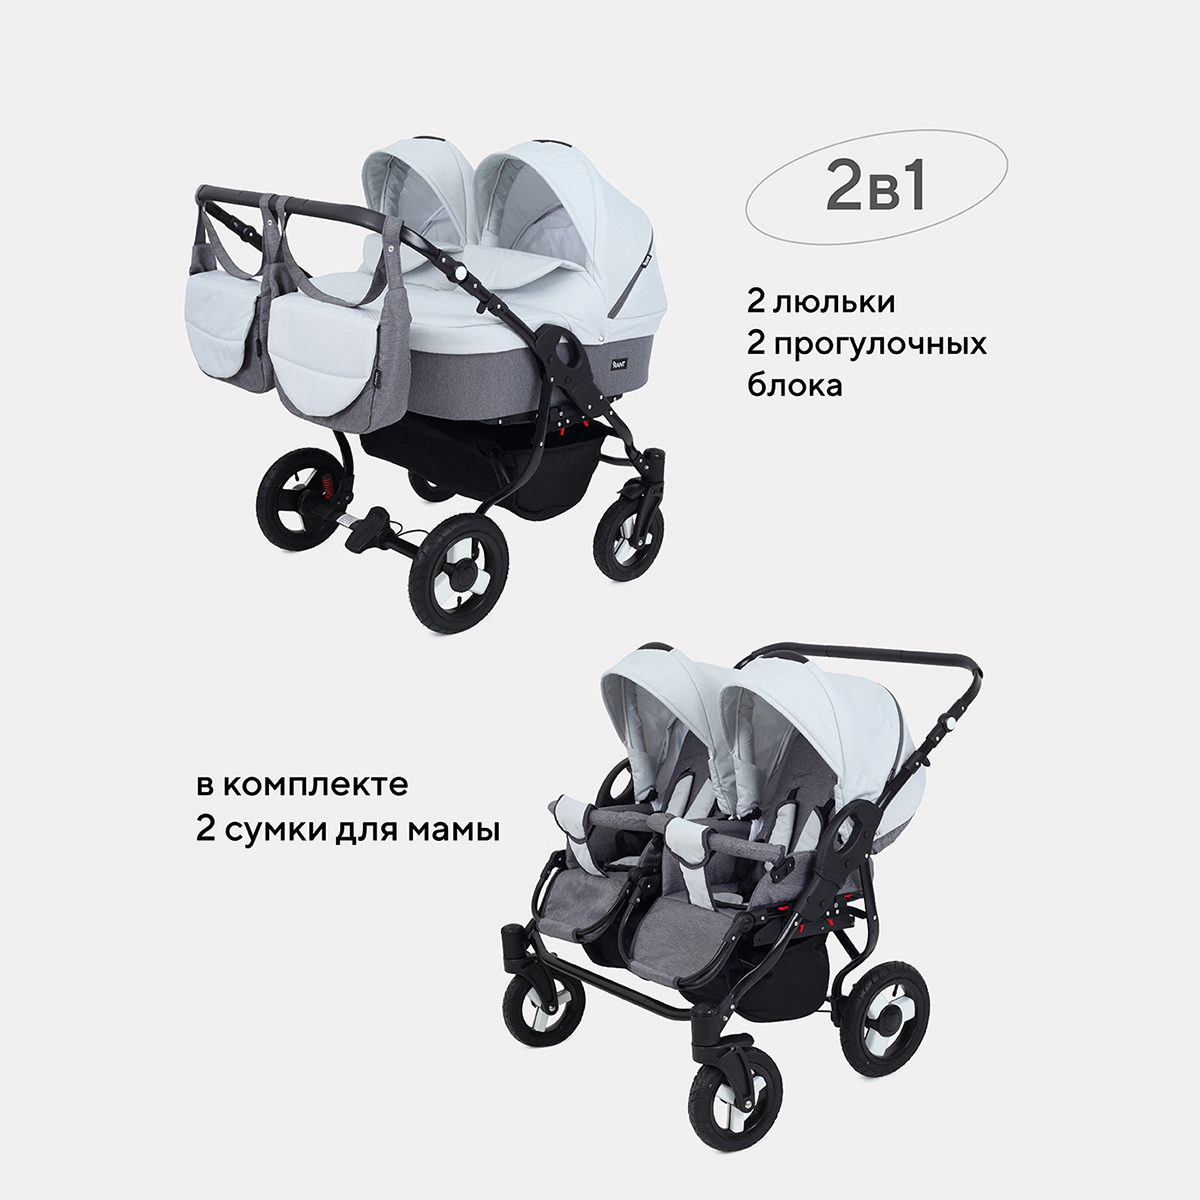 Коляска детская универсальная 2 в 1 для двойни RANT DREAM DUO 01 графит-серый коляска универсальная 2 в 1 rant patio 03 aquamarine